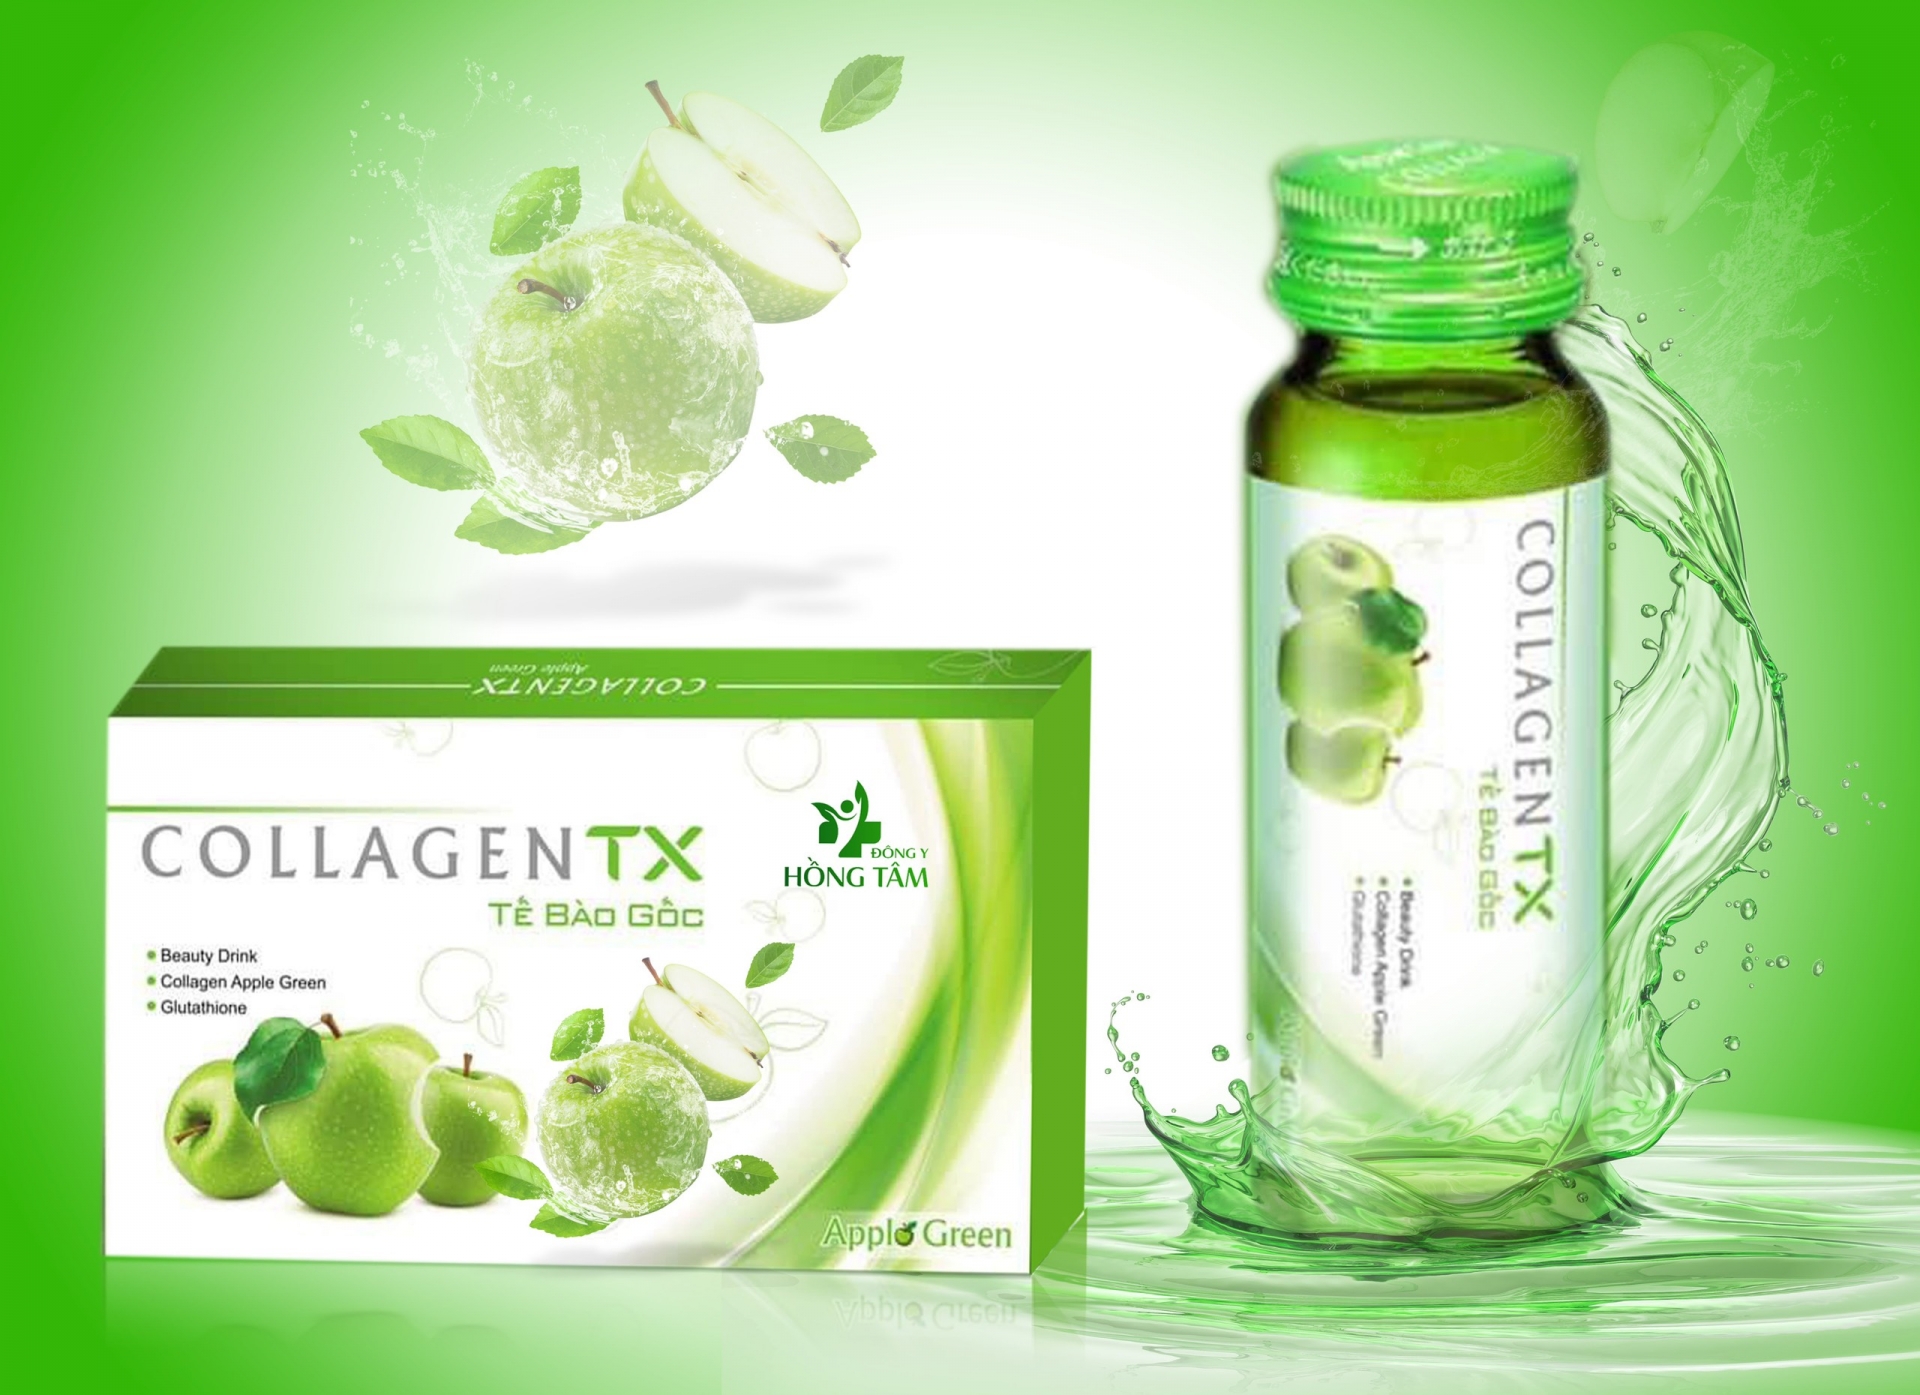 Collagen TX – tế bào gốc: Là sản phẩm được nhập khẩu nguyên liệu từ Nhật Bản; do Công ty Hồng Tâm Pharmacy bào chế và phân phối đầu tiên tại nước ta